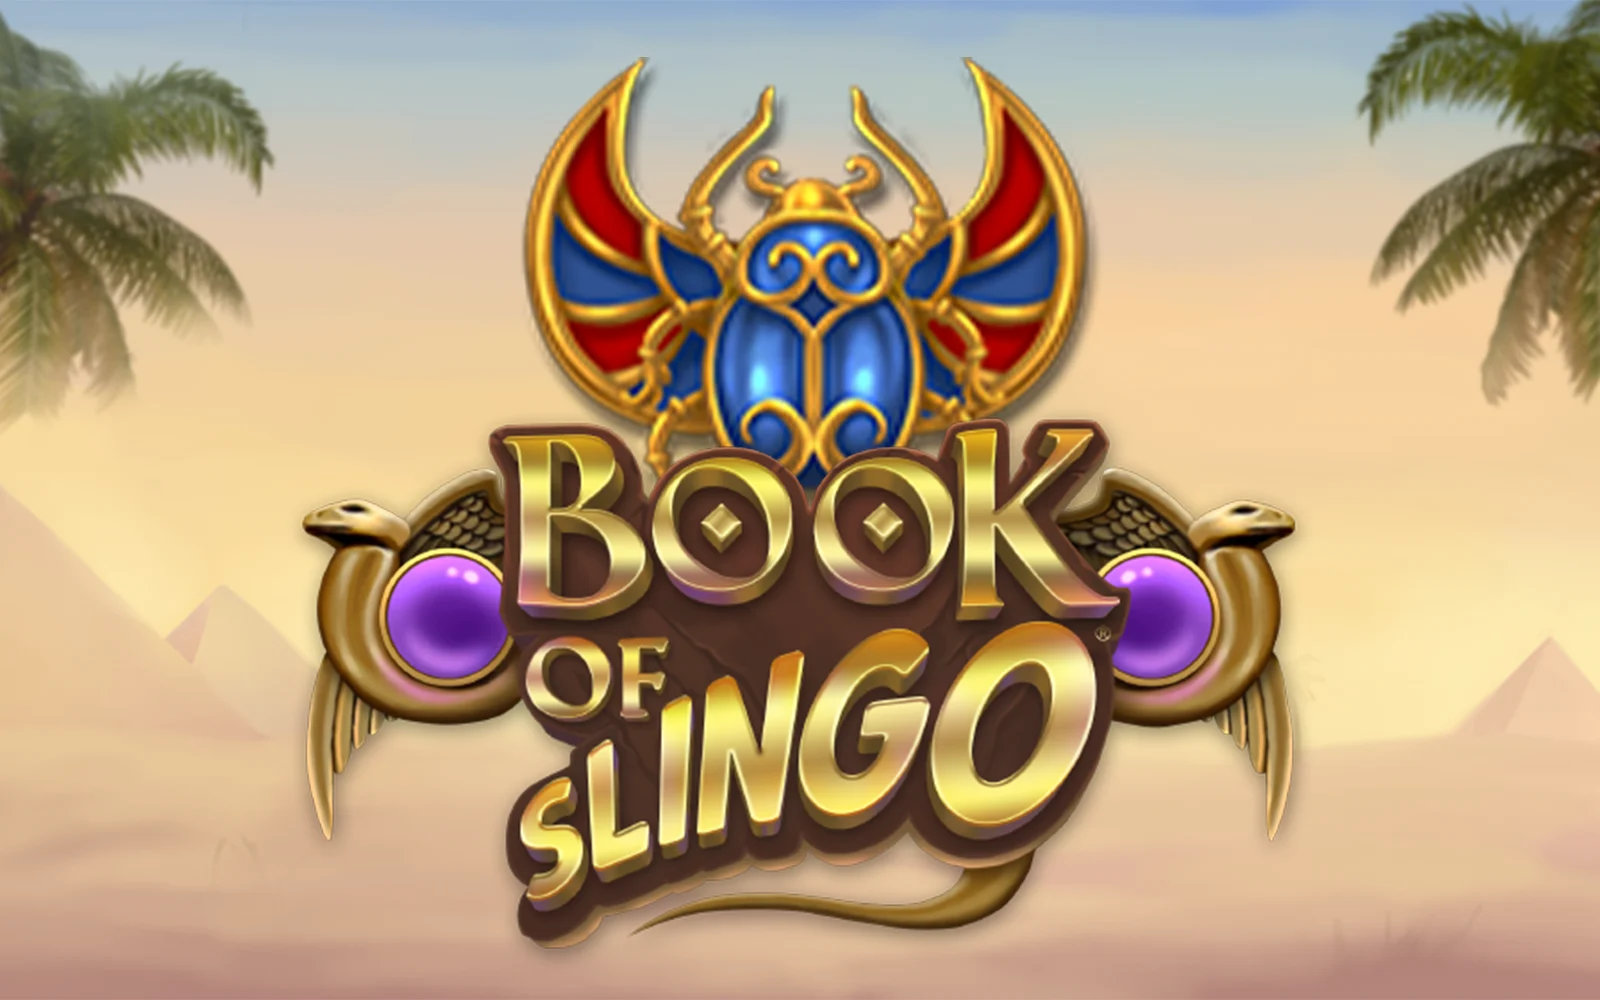 Joacă Book of Slingo în cazinoul online Starcasino.be